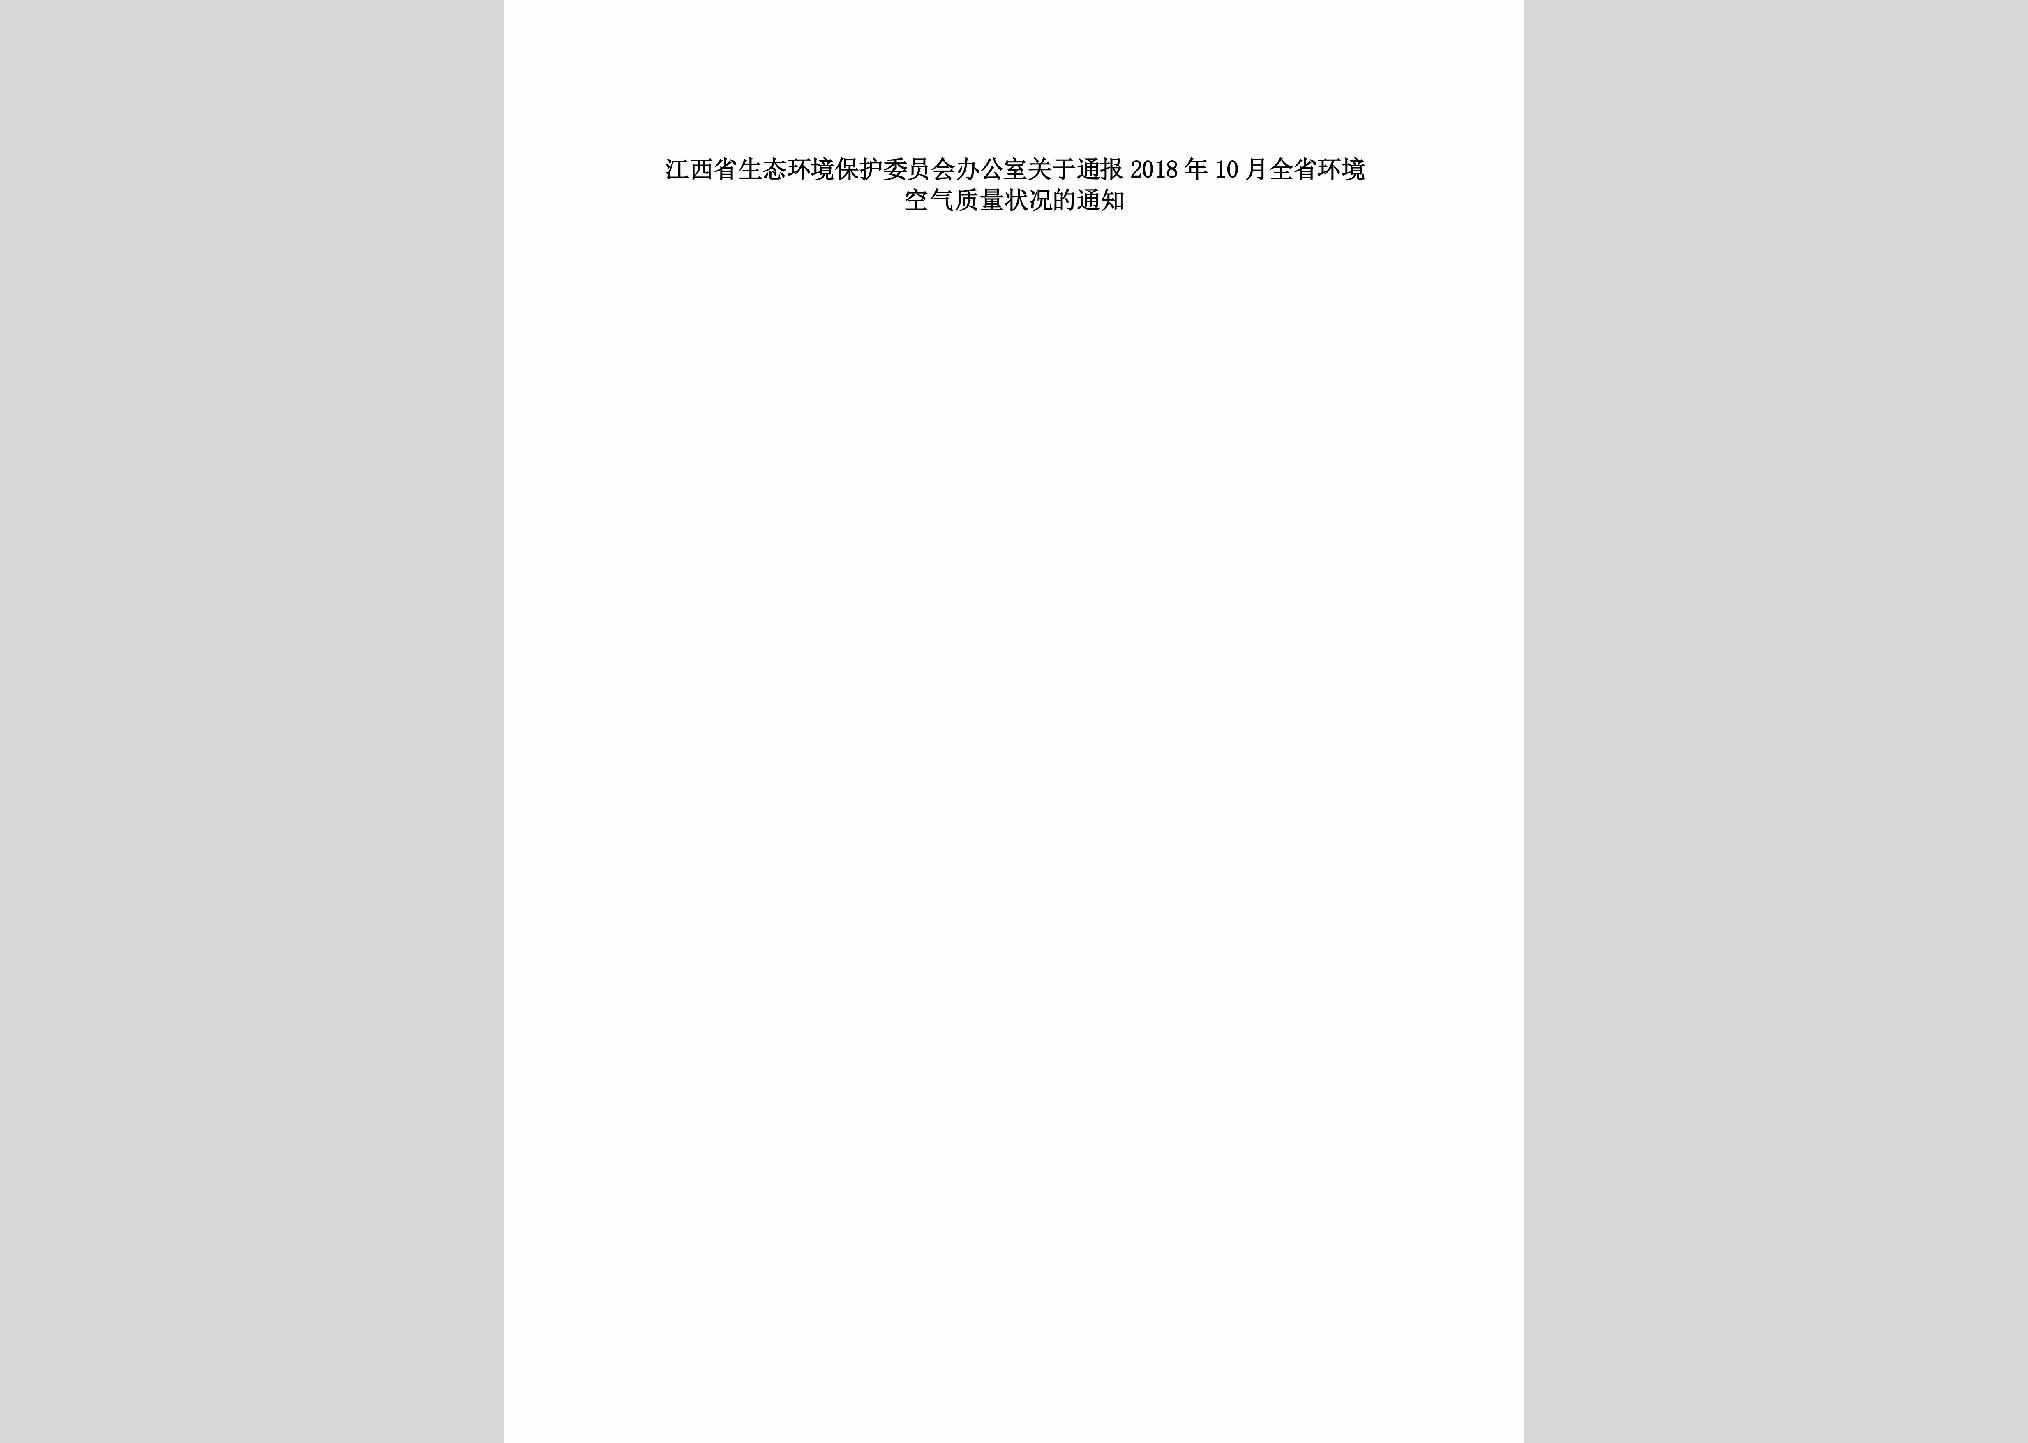 赣环委办字[2018]22号：江西省生态环境保护委员会办公室关于通报2018年10月全省环境空气质量状况的通知